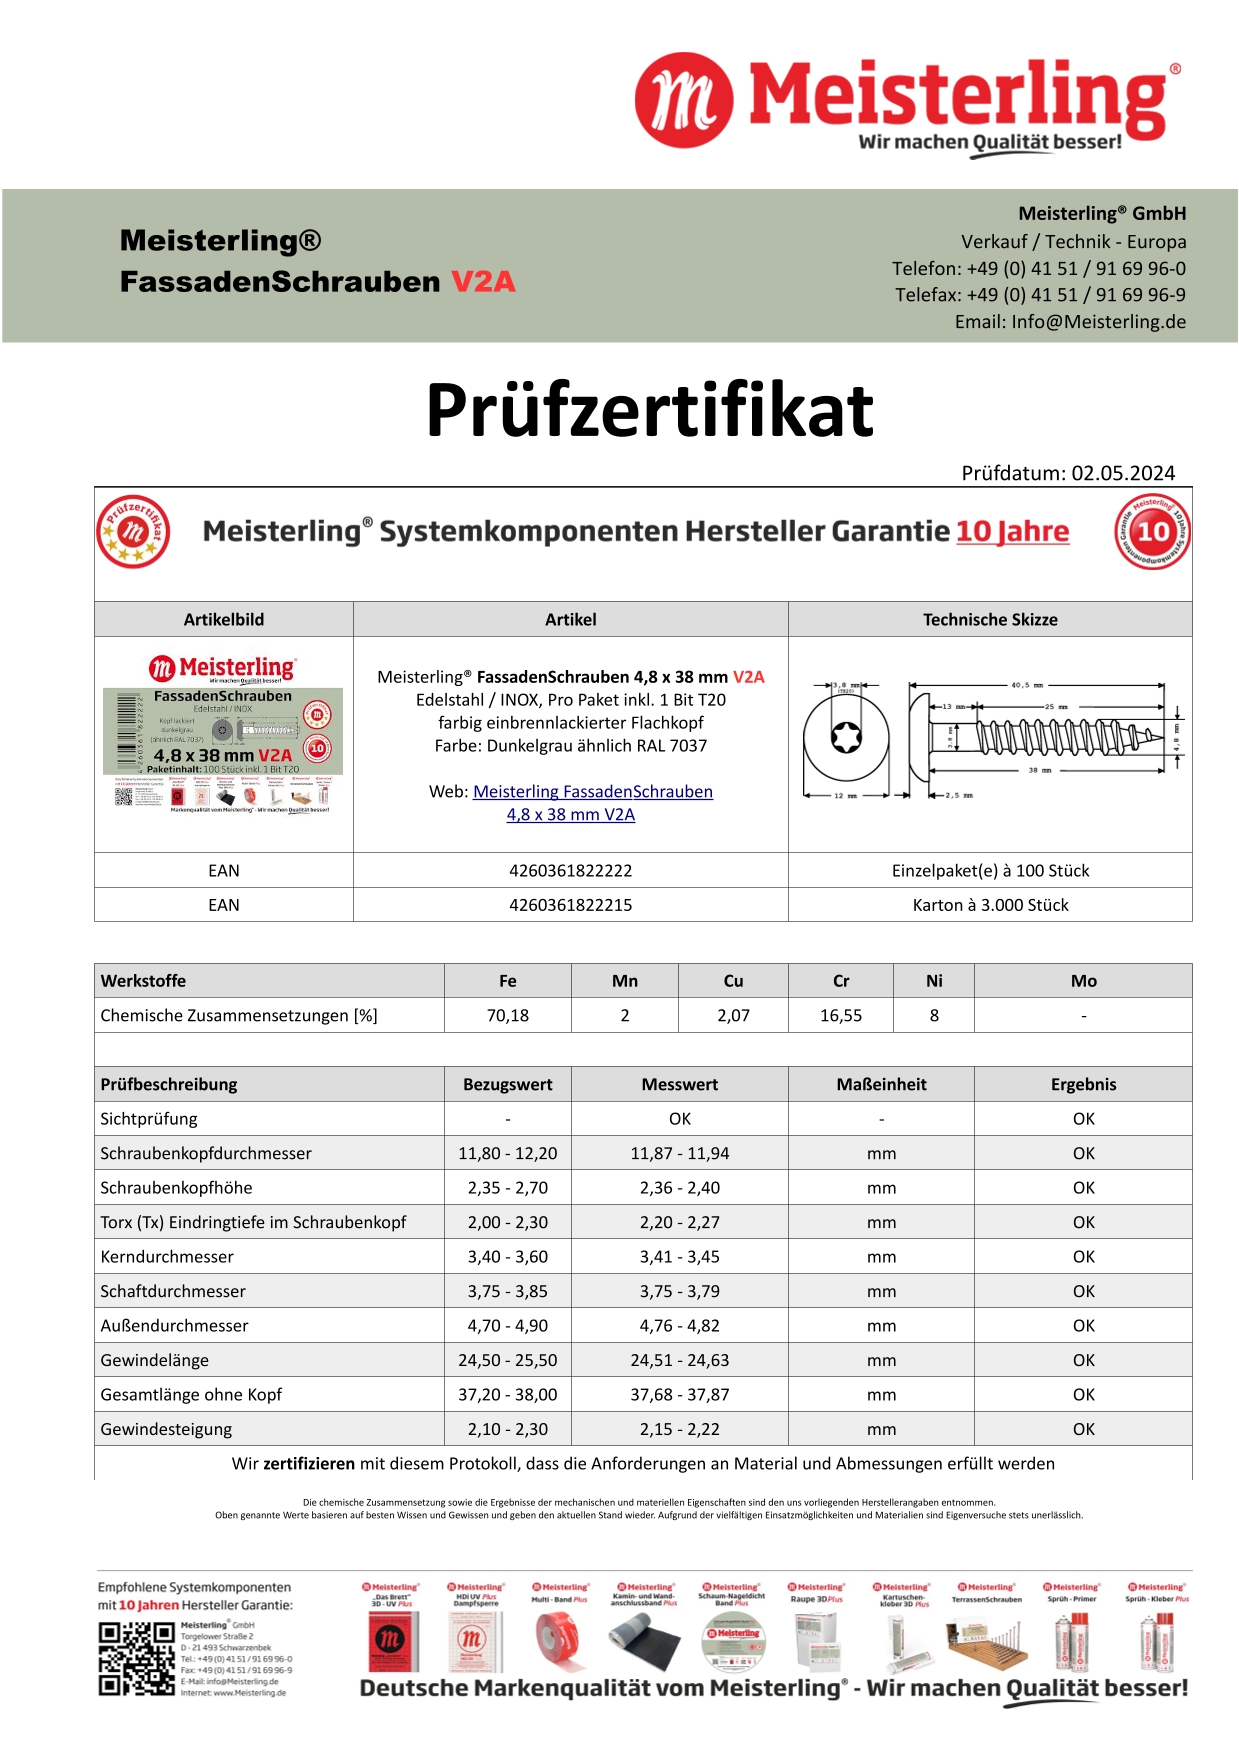 Prüfzertifikat Meisterling® FassadenSchrauben 4,8 x 38 mm V2a dunkelgrau